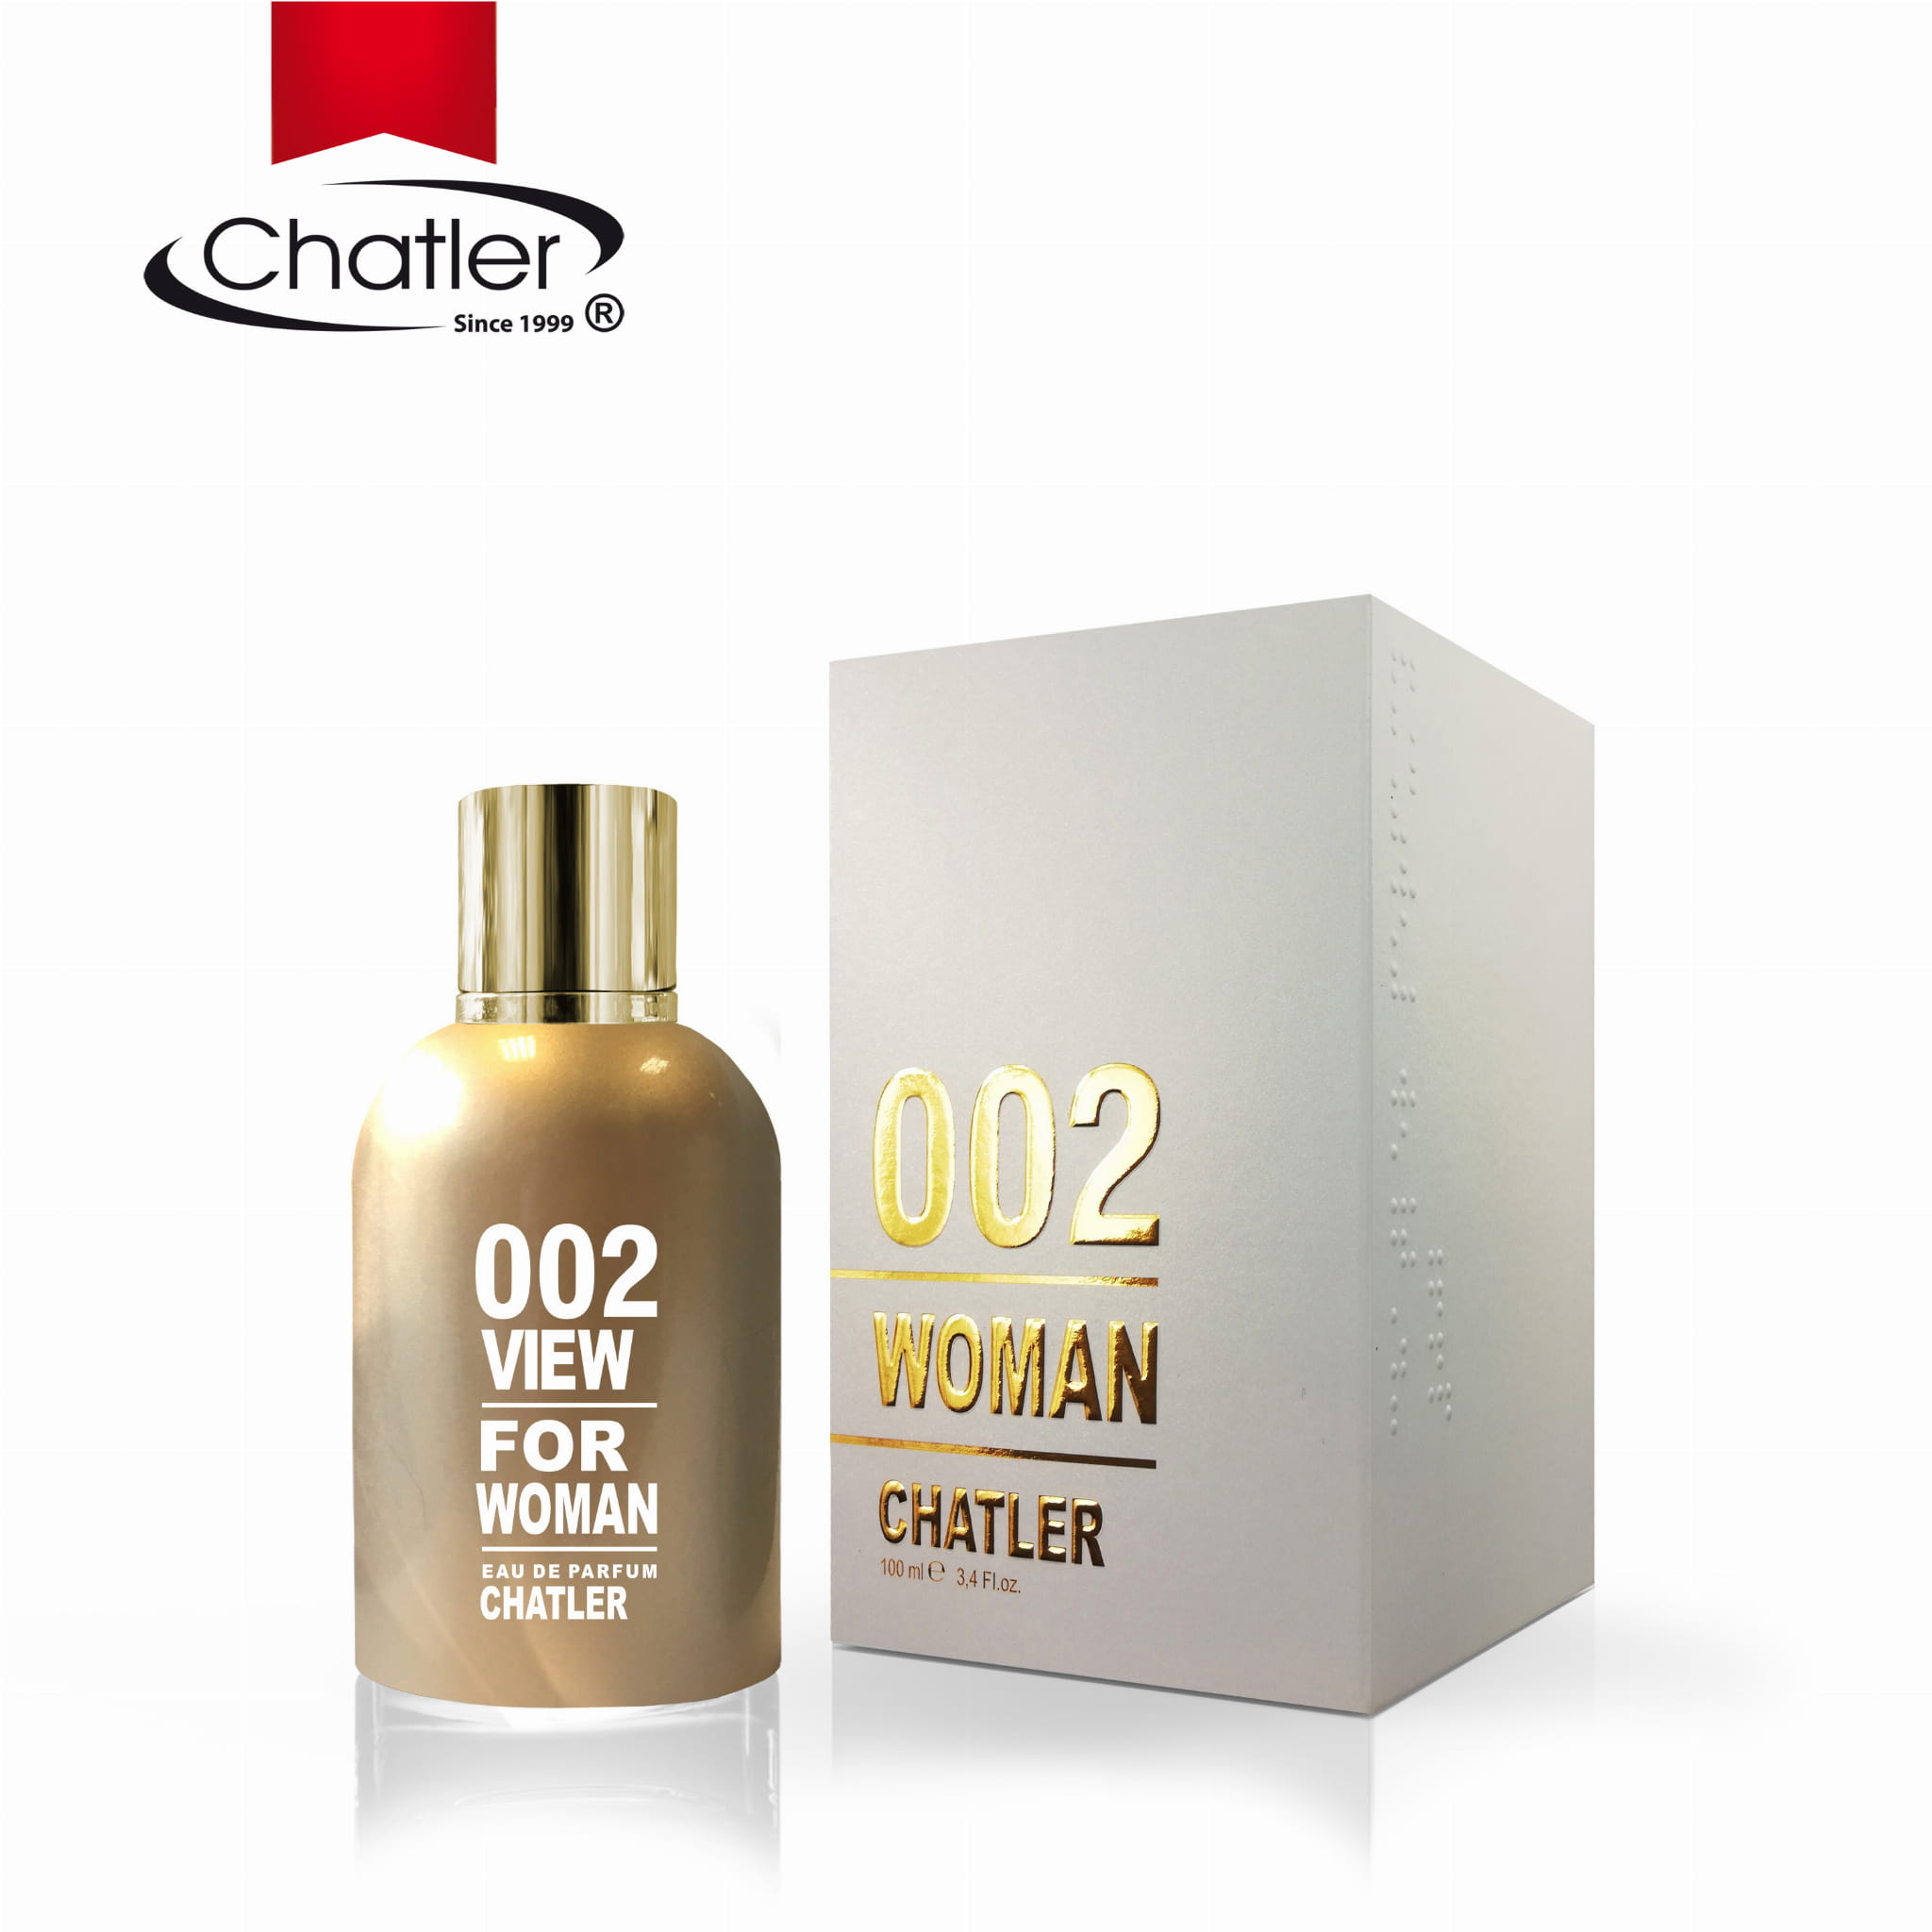 CHATLER 002 VIEW FOR WOMAN - parfémová voda 100ml 